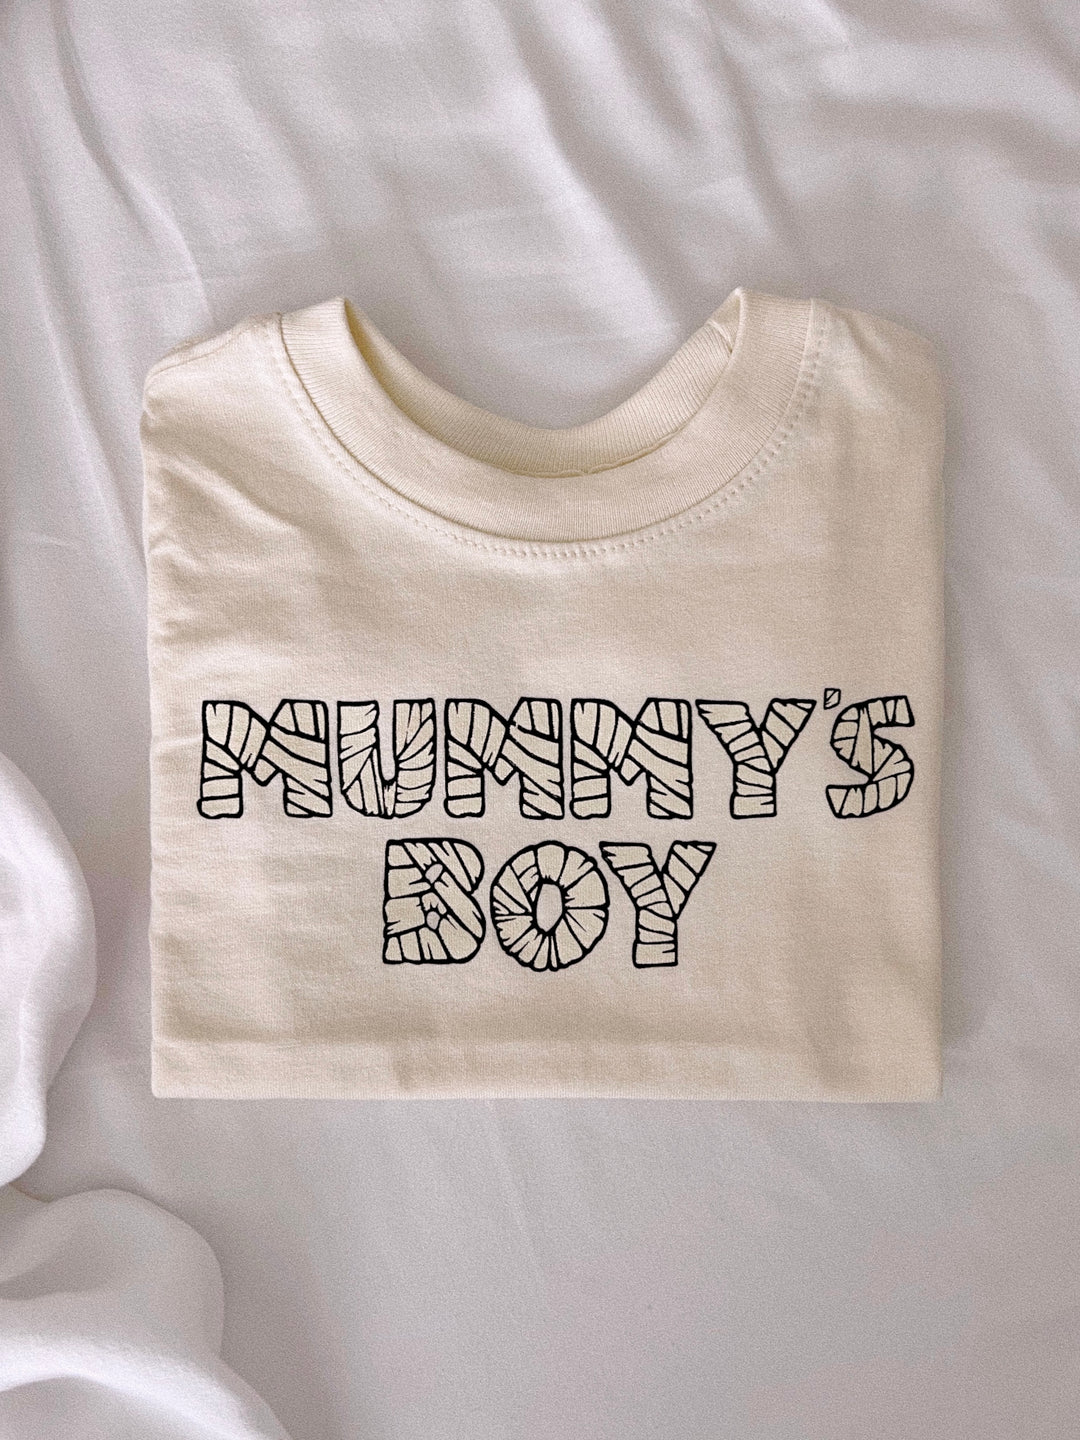 Mummy's Boy Kid’s Tee